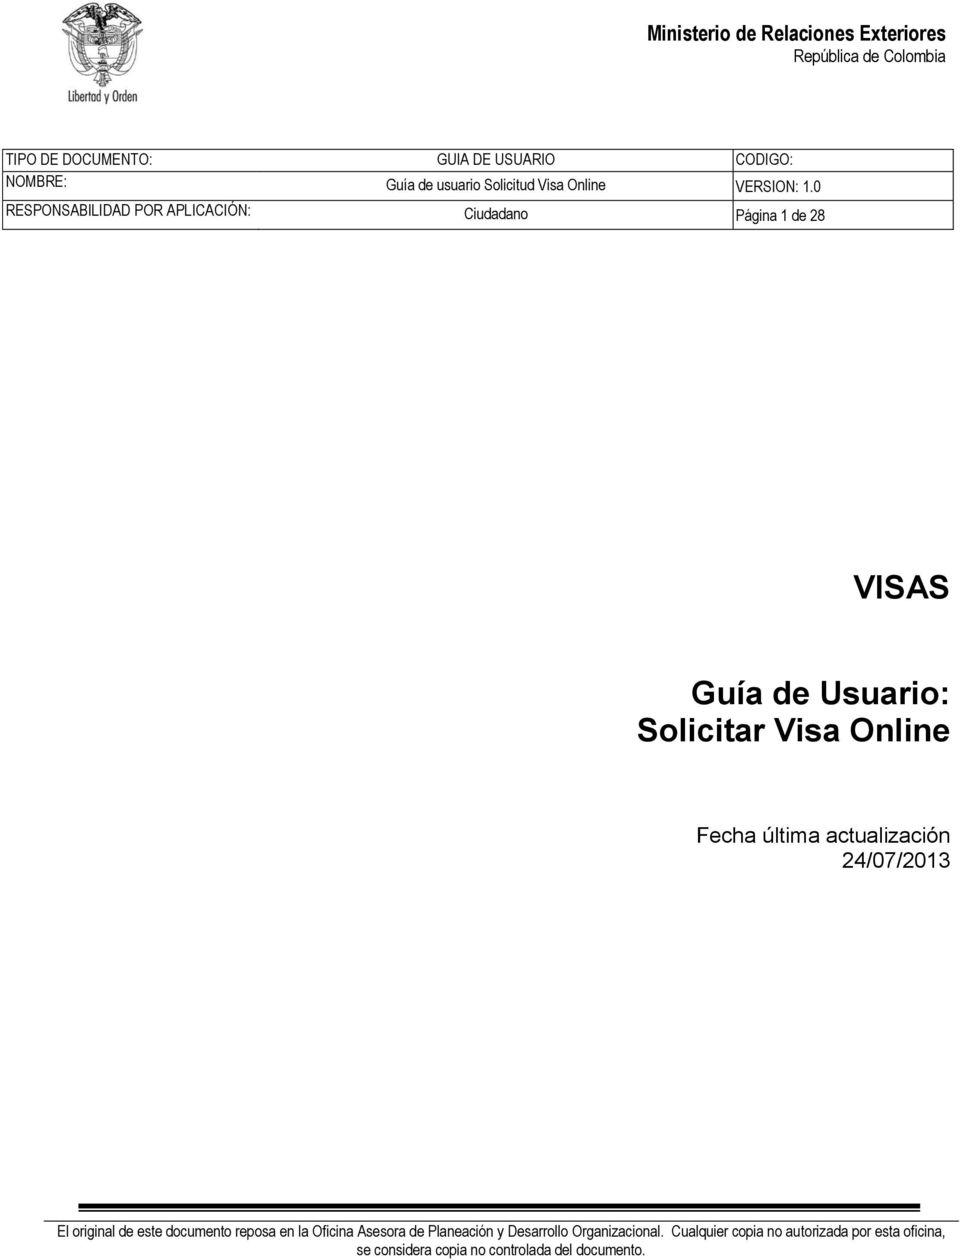 Guía de Usuario: Solicitar Visa